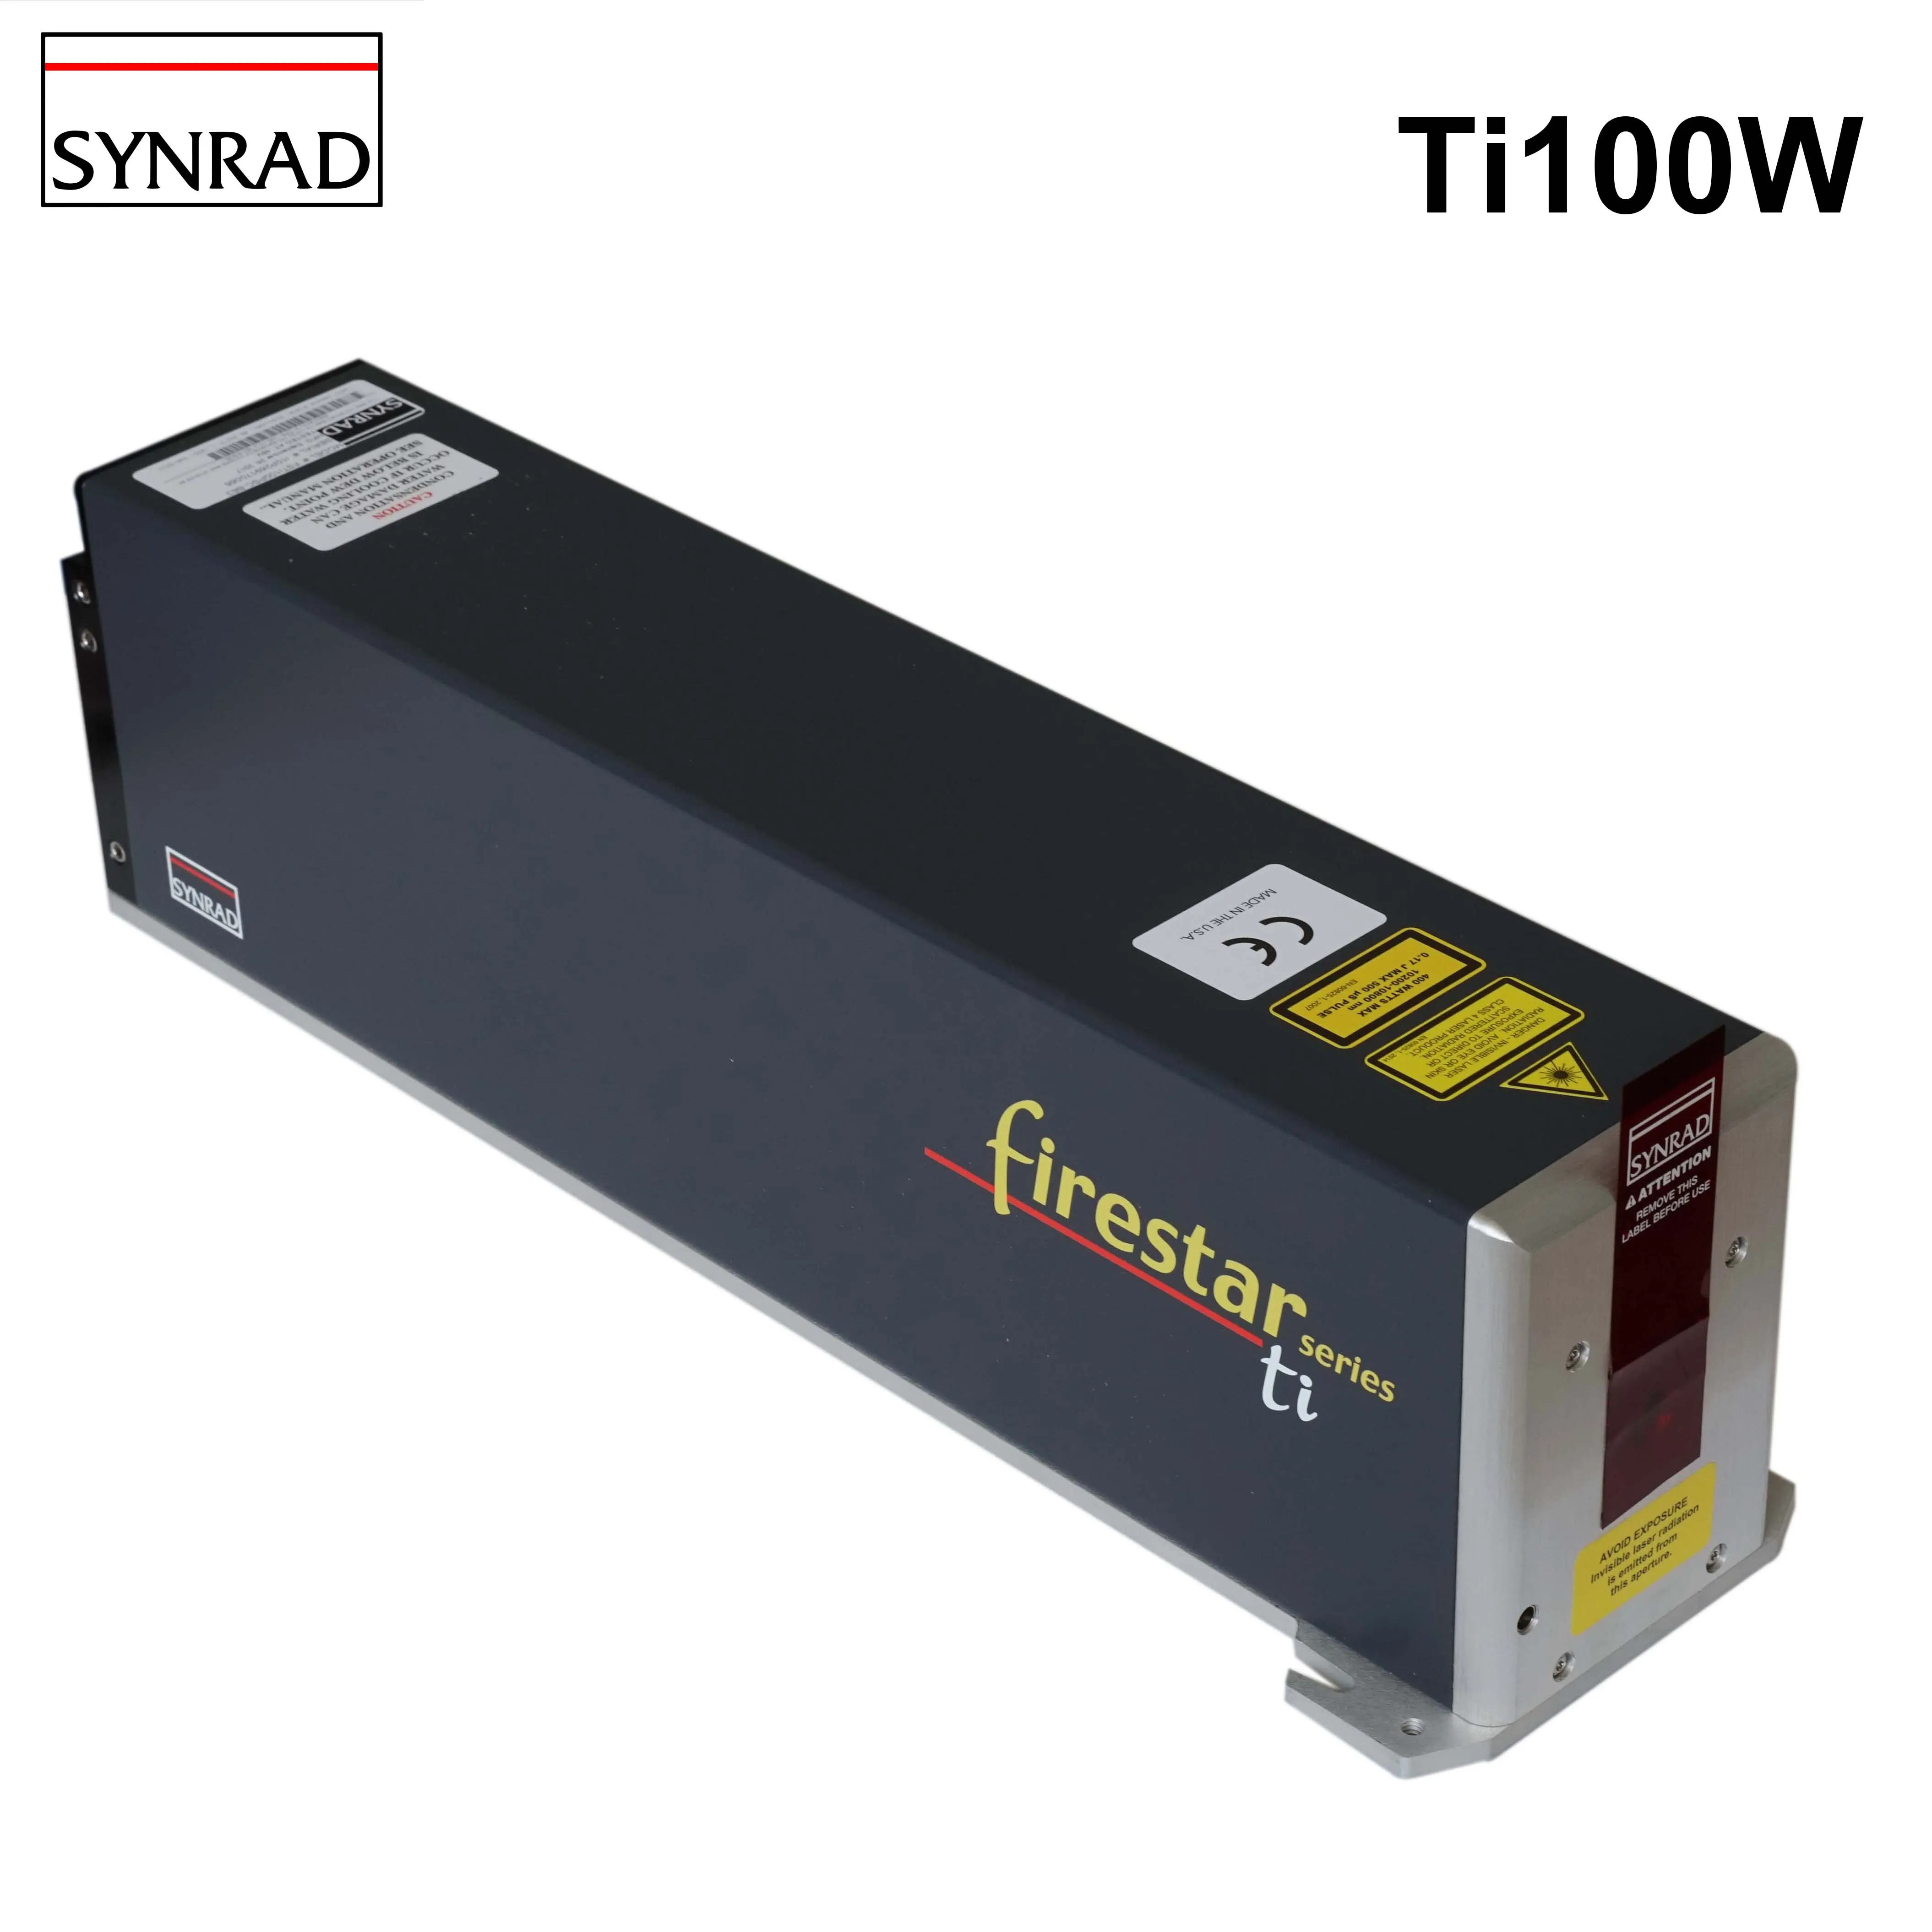 Хорошее качество Synrad ti100w лазерная трубка металлические детали для трубки CO2 лазерная маркировочная машина